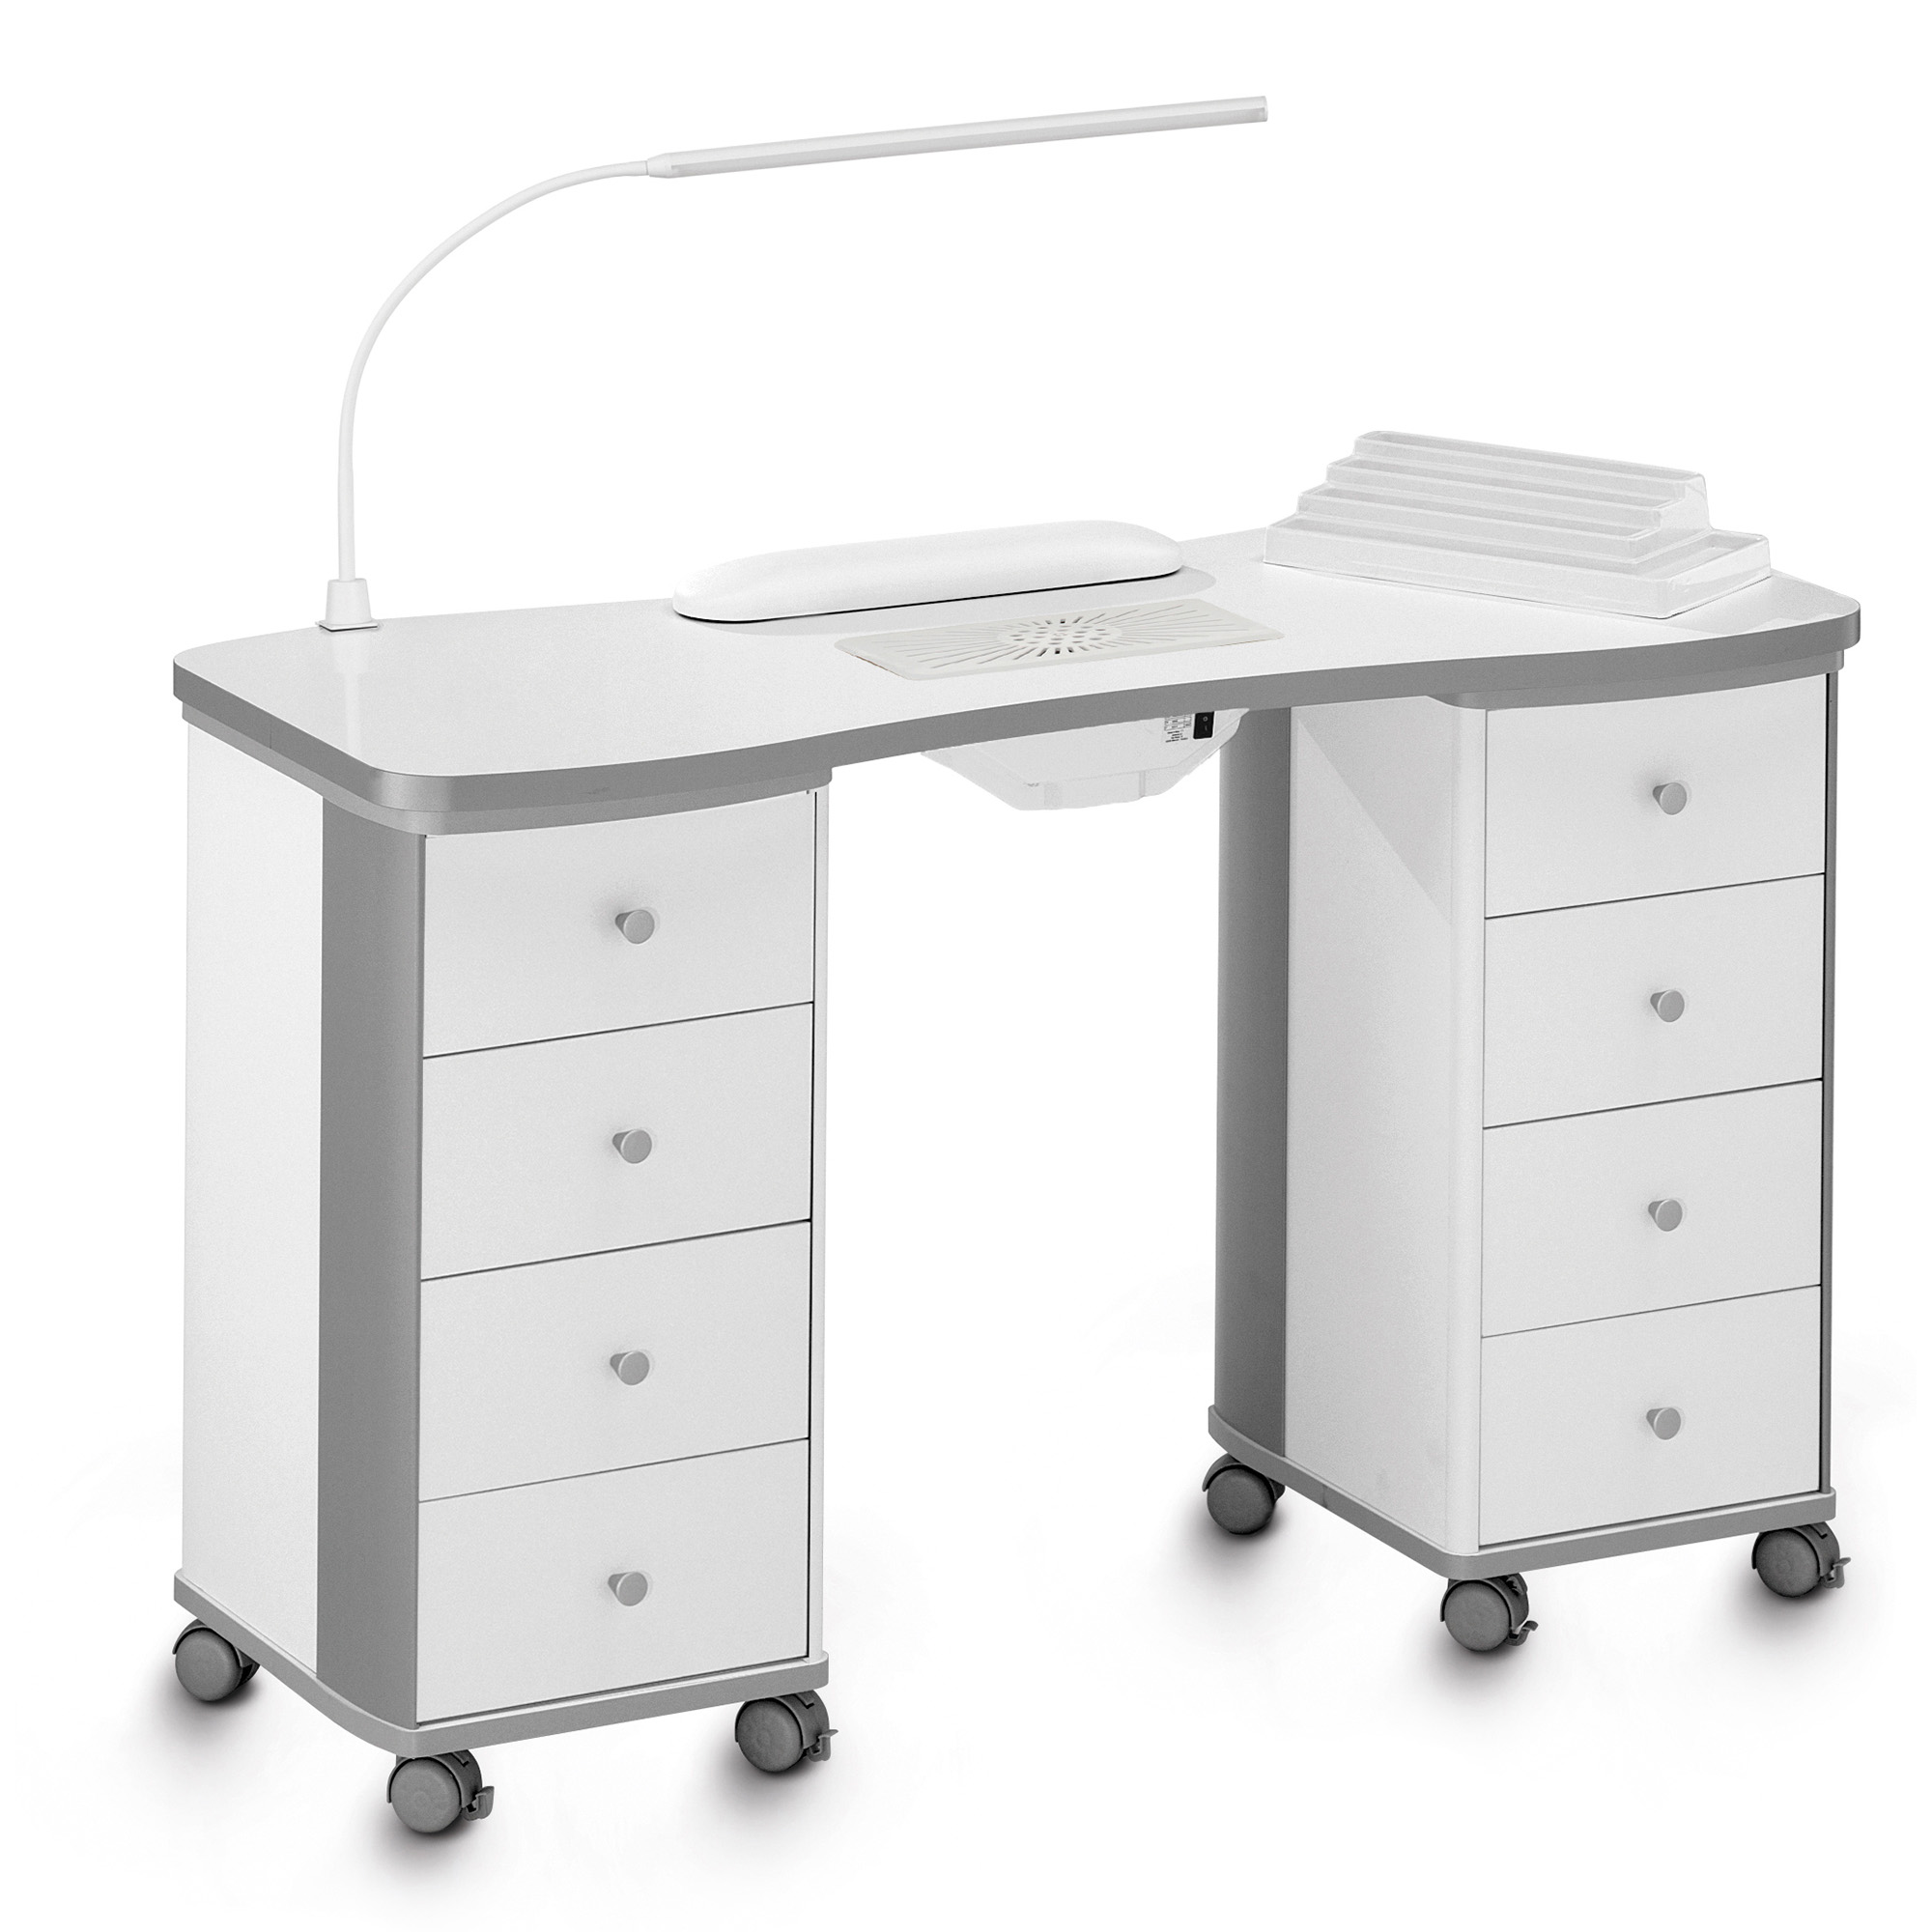 Table de manucure professionnelle Ariel avec unité d'aspiration, compartiment de rangement, tiroirs et lampe